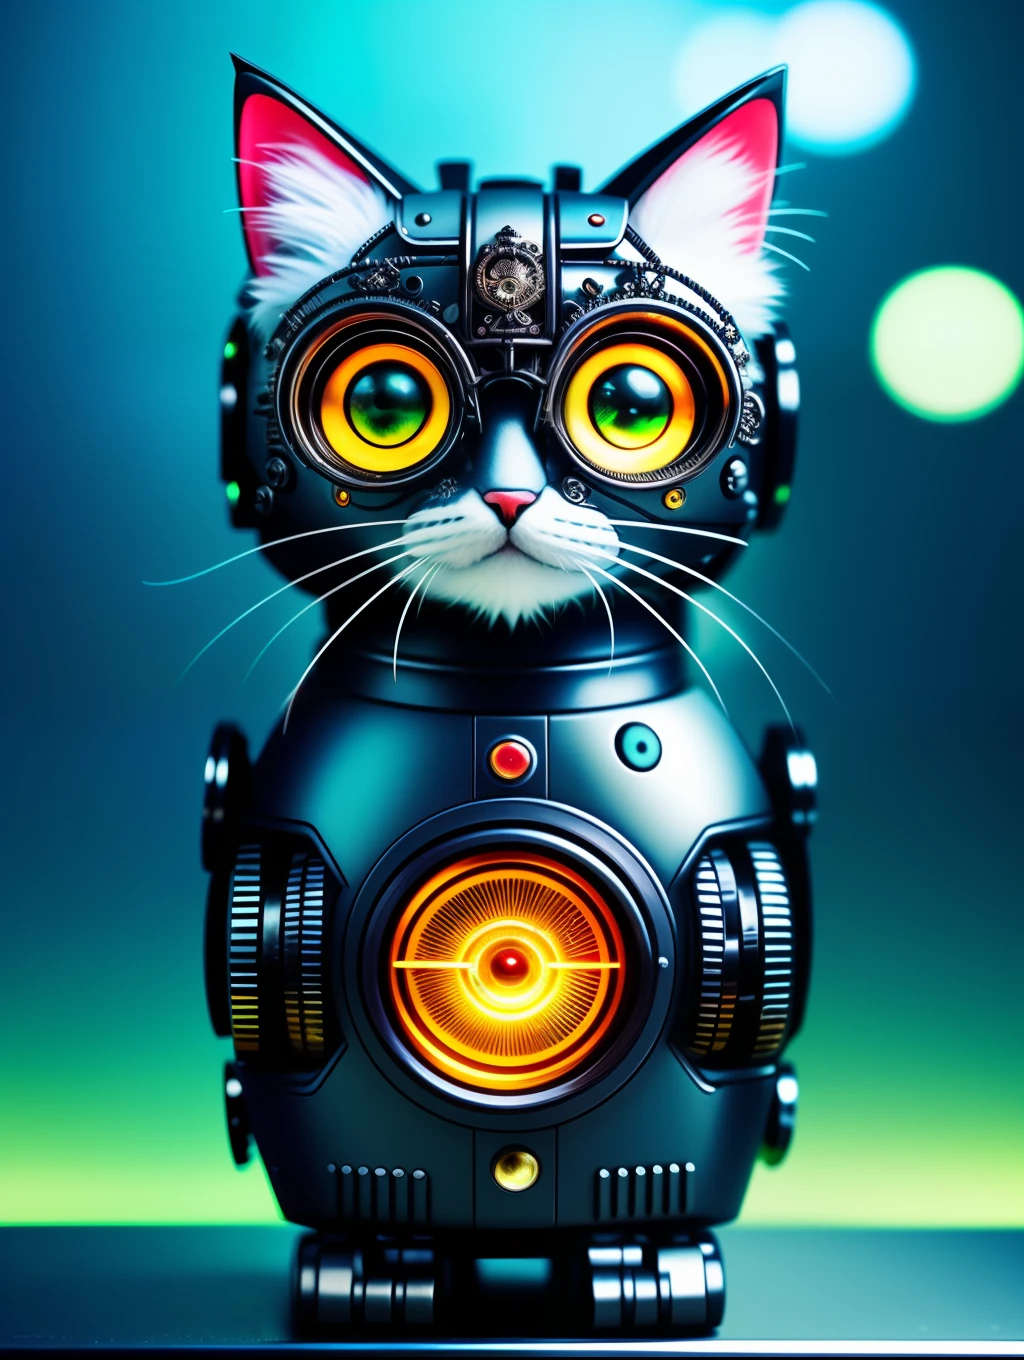 Un joli chaton moelleux en métal, robot, Style cyberpunk, horlogerie, ((détail complexe)), hdr, gros yeux, ((détail complexe, super détail)), tube à vide ou tube, Objectif de cinéma, vignette, Arrière-plan de l’effet bokeh